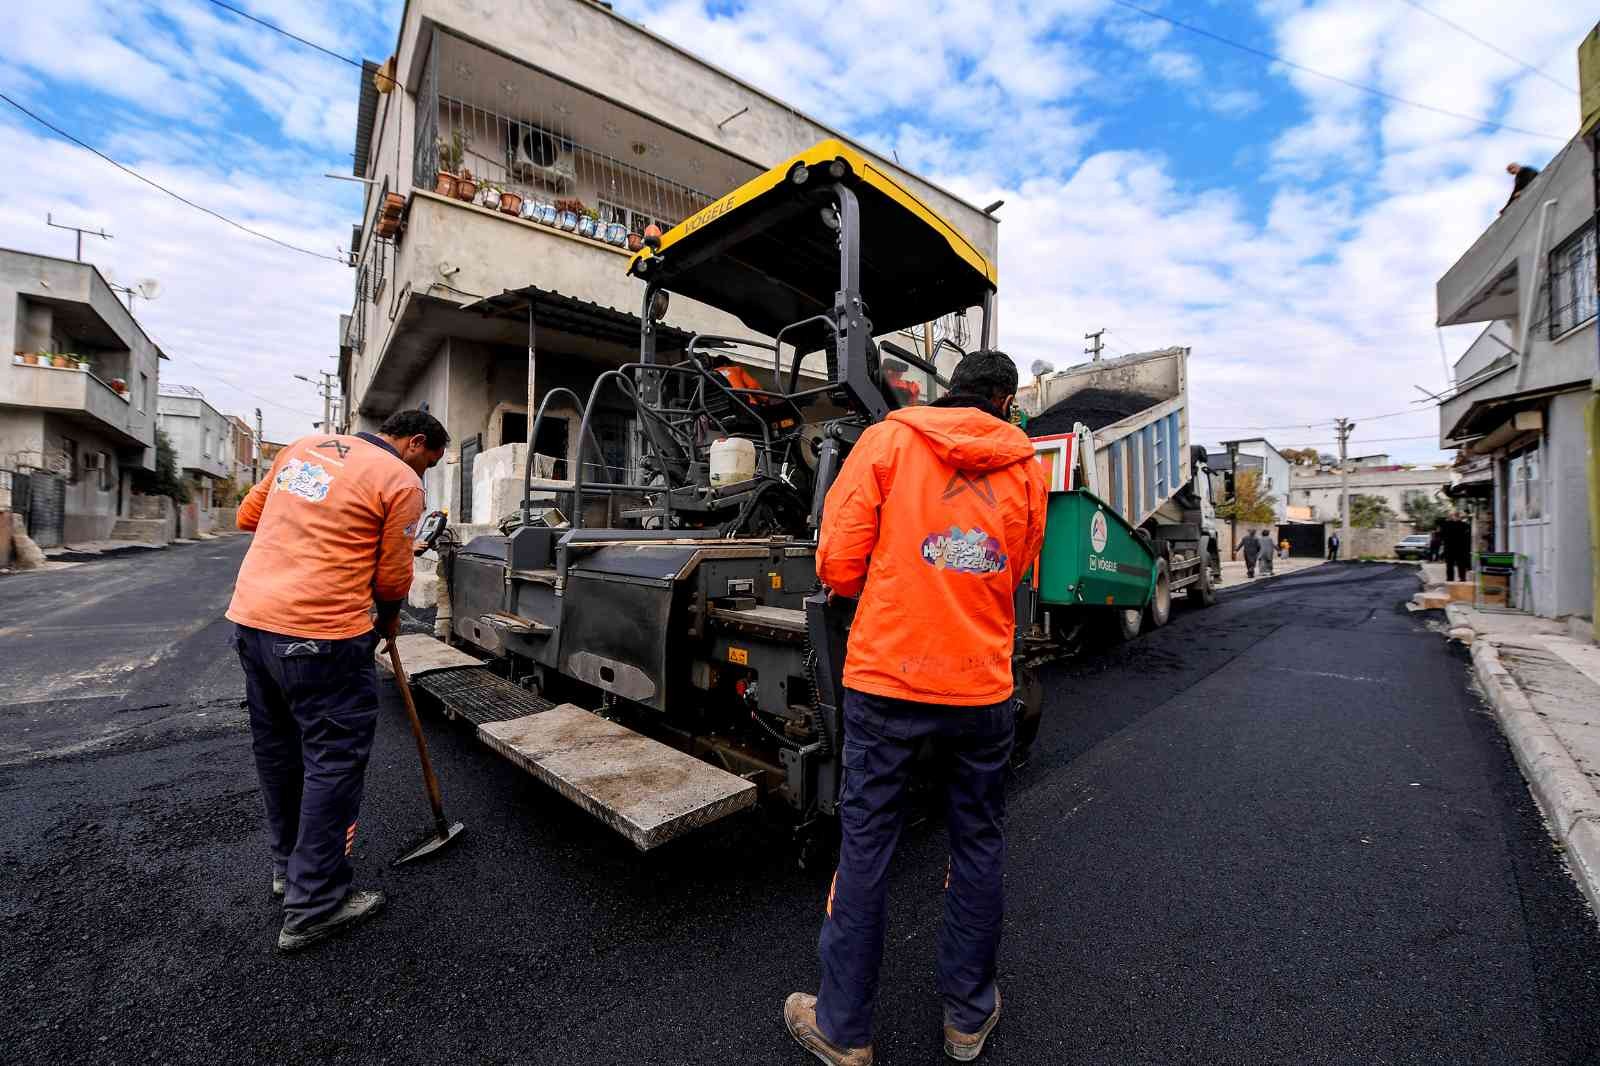 Mersin’de asfalt çalışmaları sürüyor #mersin